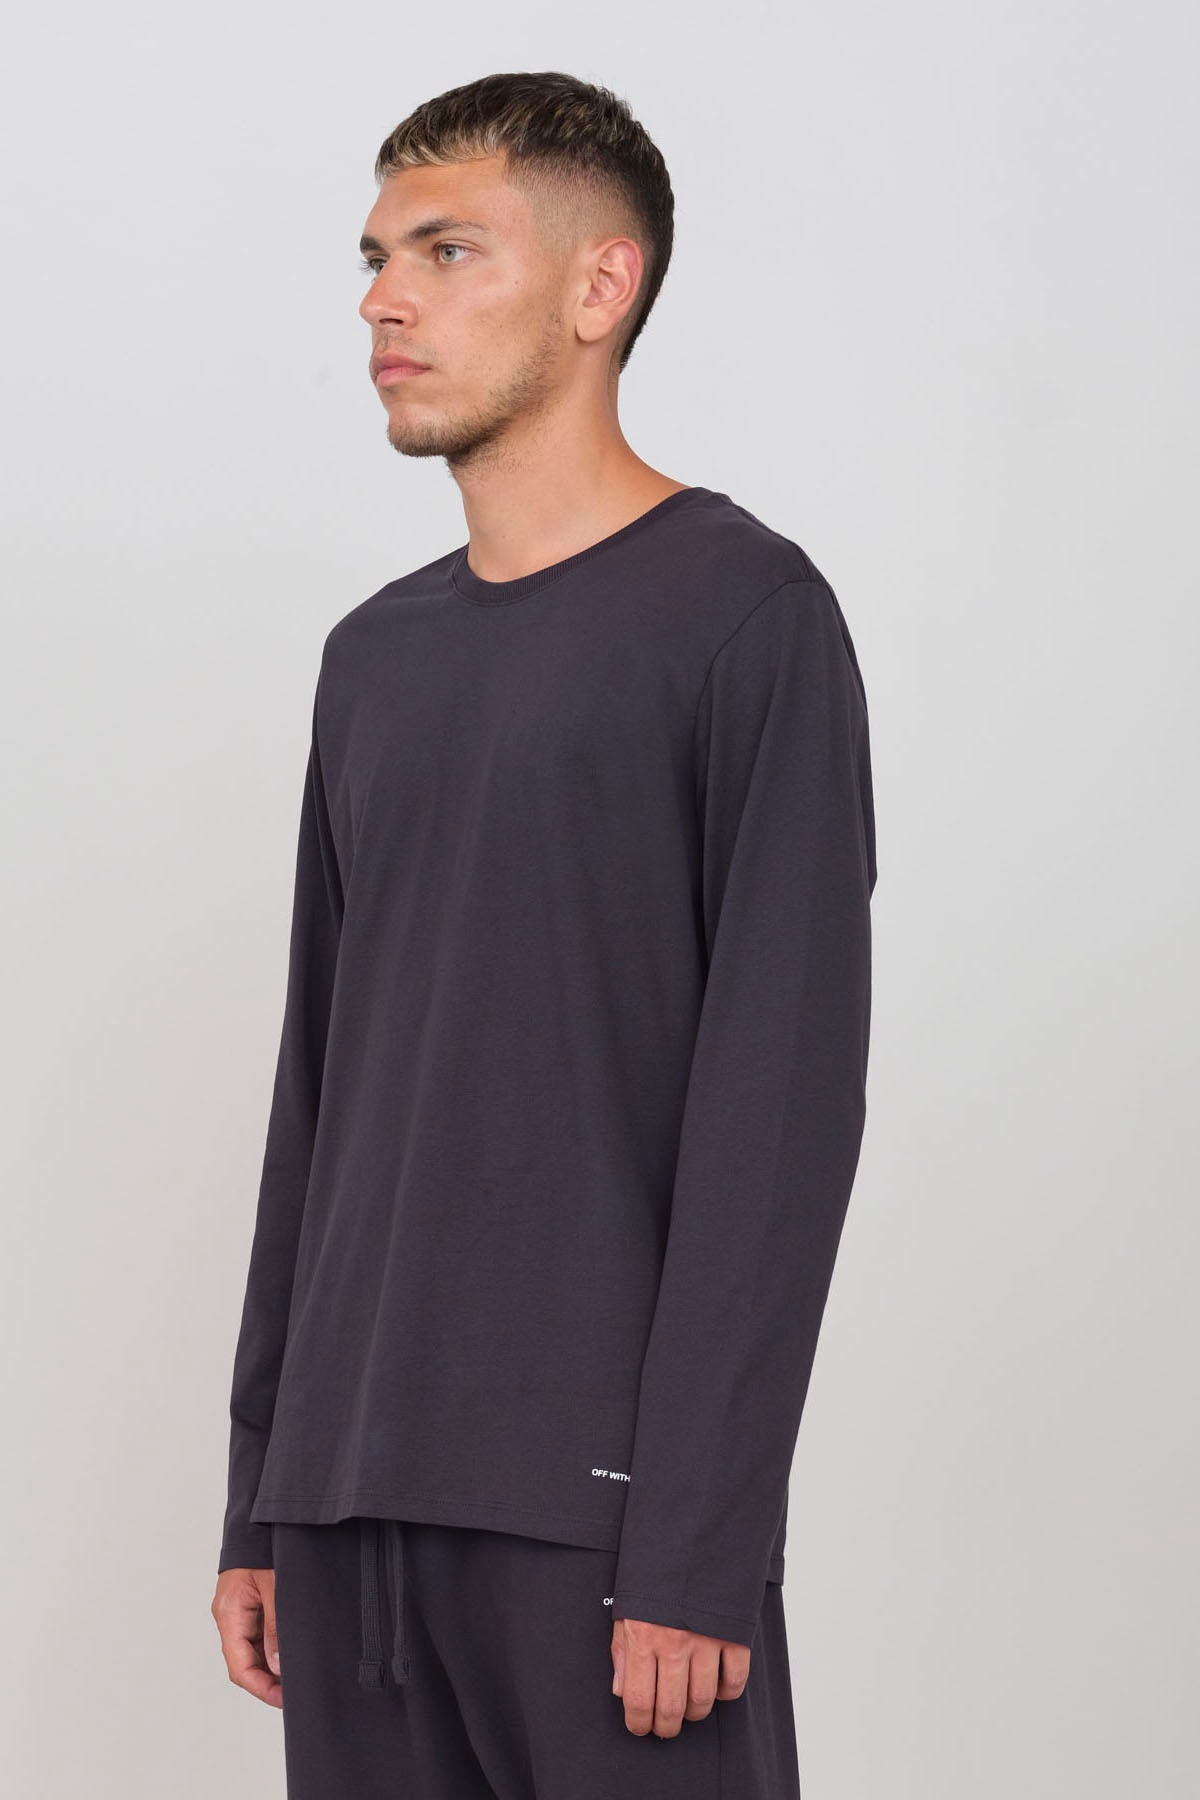 OWN: T-shirt Girocollo a Manica lunga in cotone organico per Uomo - L / Blu